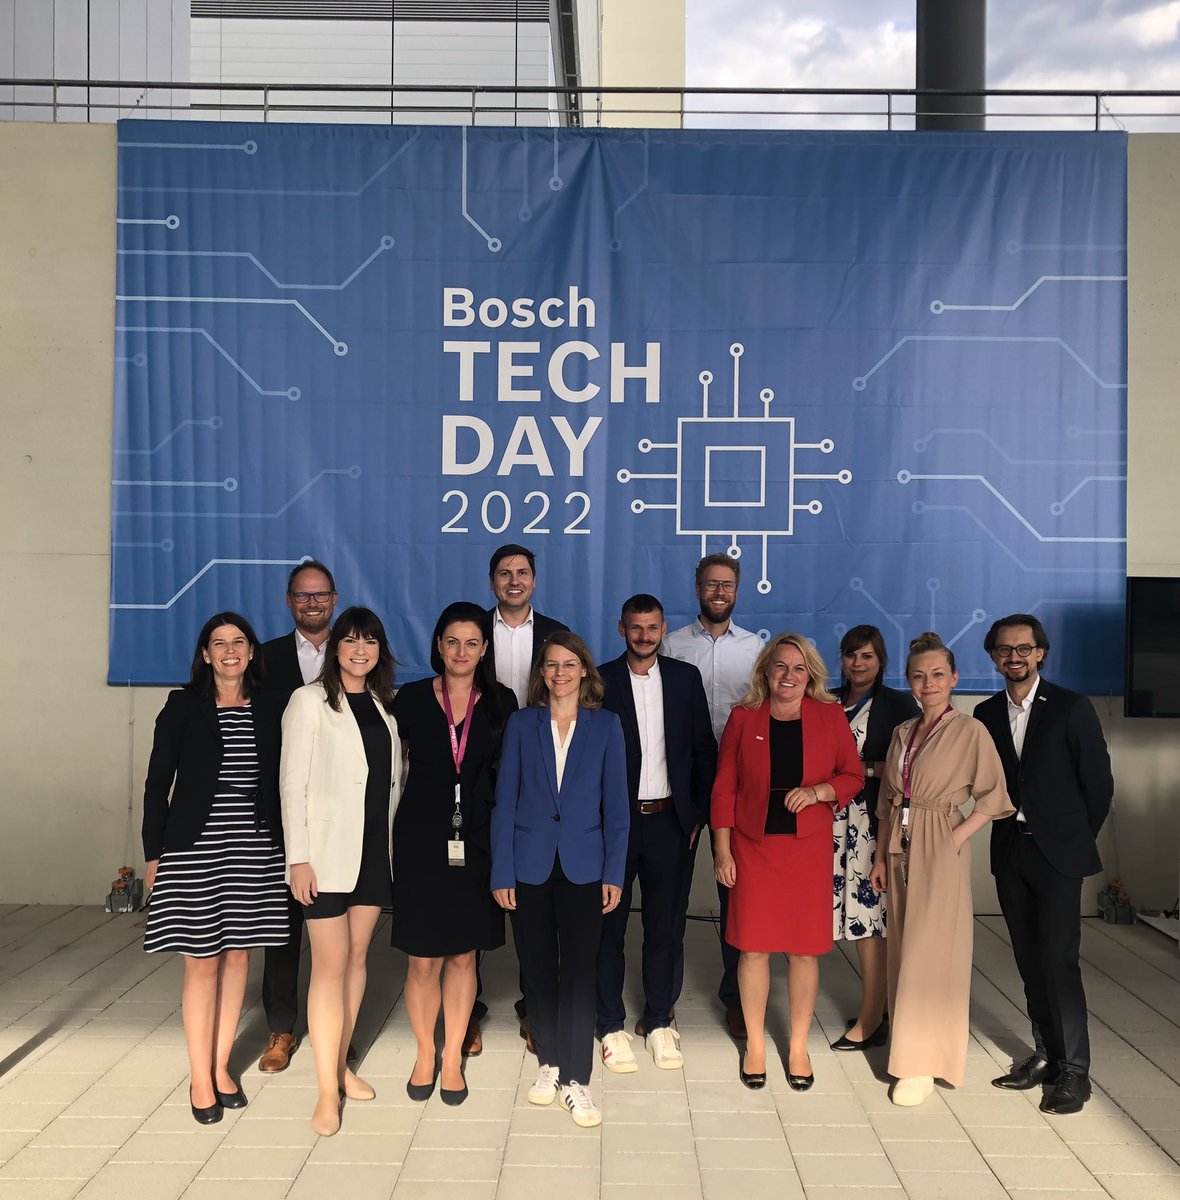 Schön war‘s! Wir verabschieden uns vom #BoschTechDay. Ein großes Dankeschön an alle unsere Gäste - und an unsere Kolleginnen und Kollegen aus der #Chipfabrik in @stadt_dresden für die tolle Unterstützung. Wir kommen wieder!